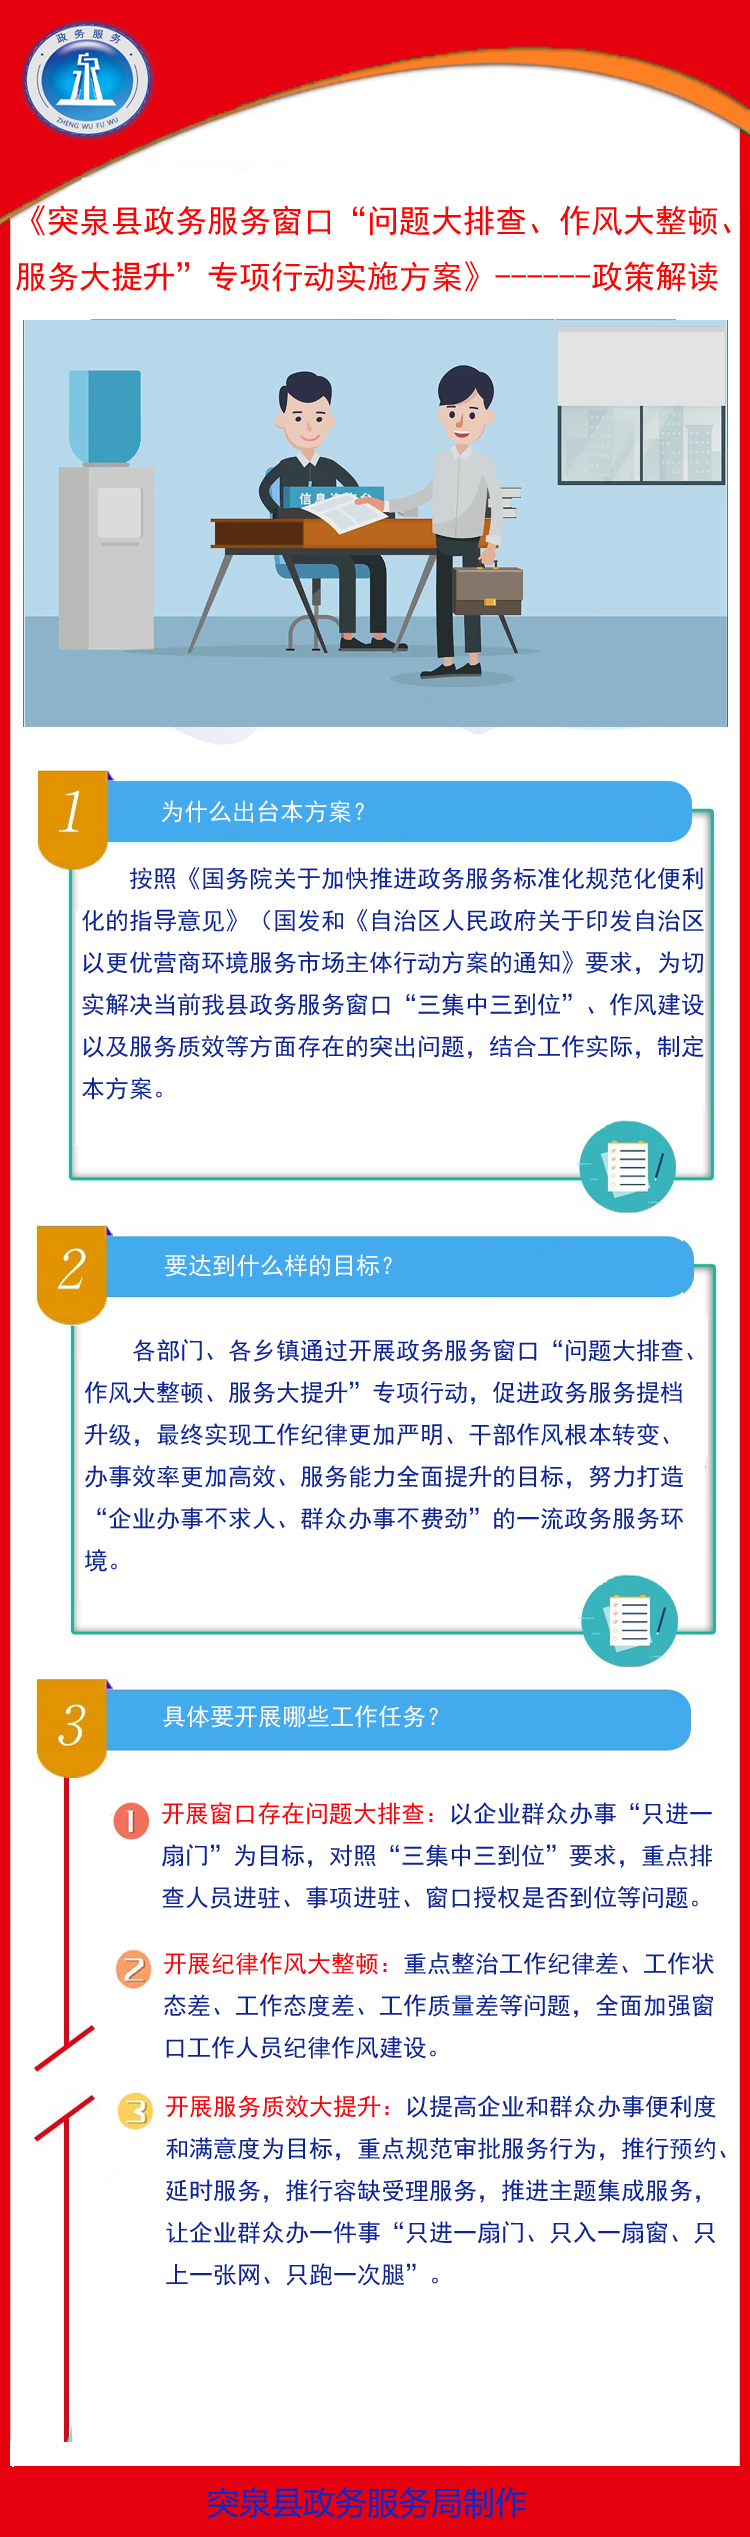 1.（45号）突泉县政务服务窗口“问题大排查、作风大整顿、服务大提升”专项行动实施方案